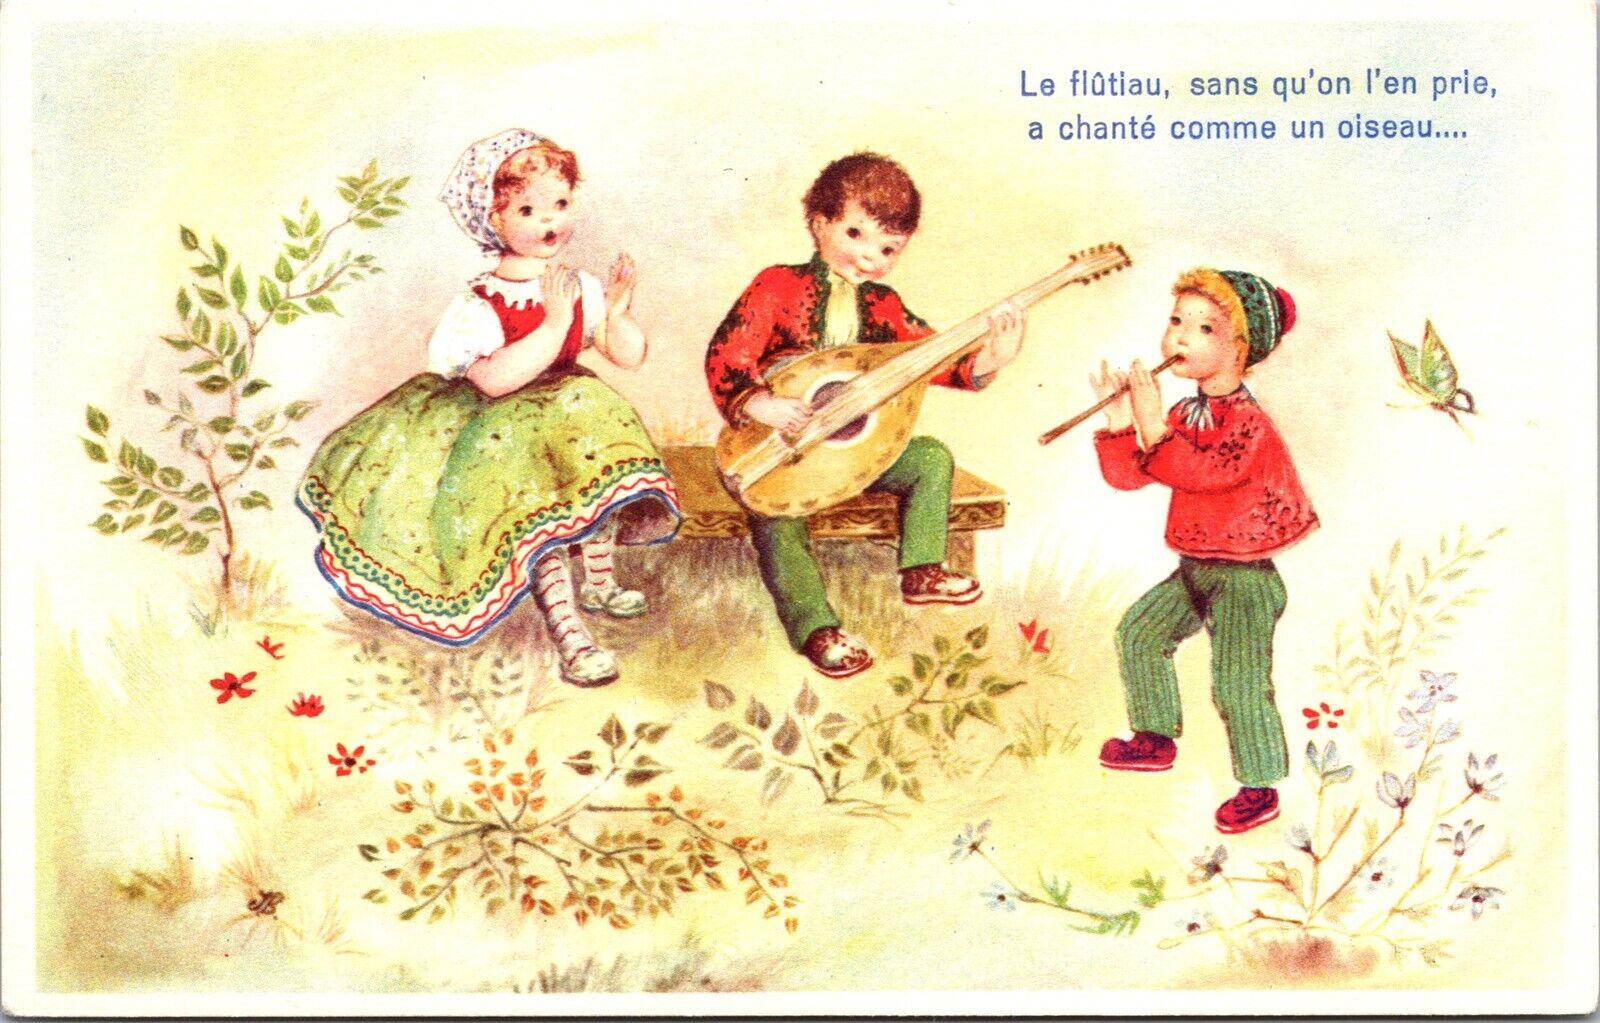 Vtg La Flutiau, sans qu'on l'en prie, a chante comme un olseau Postcard